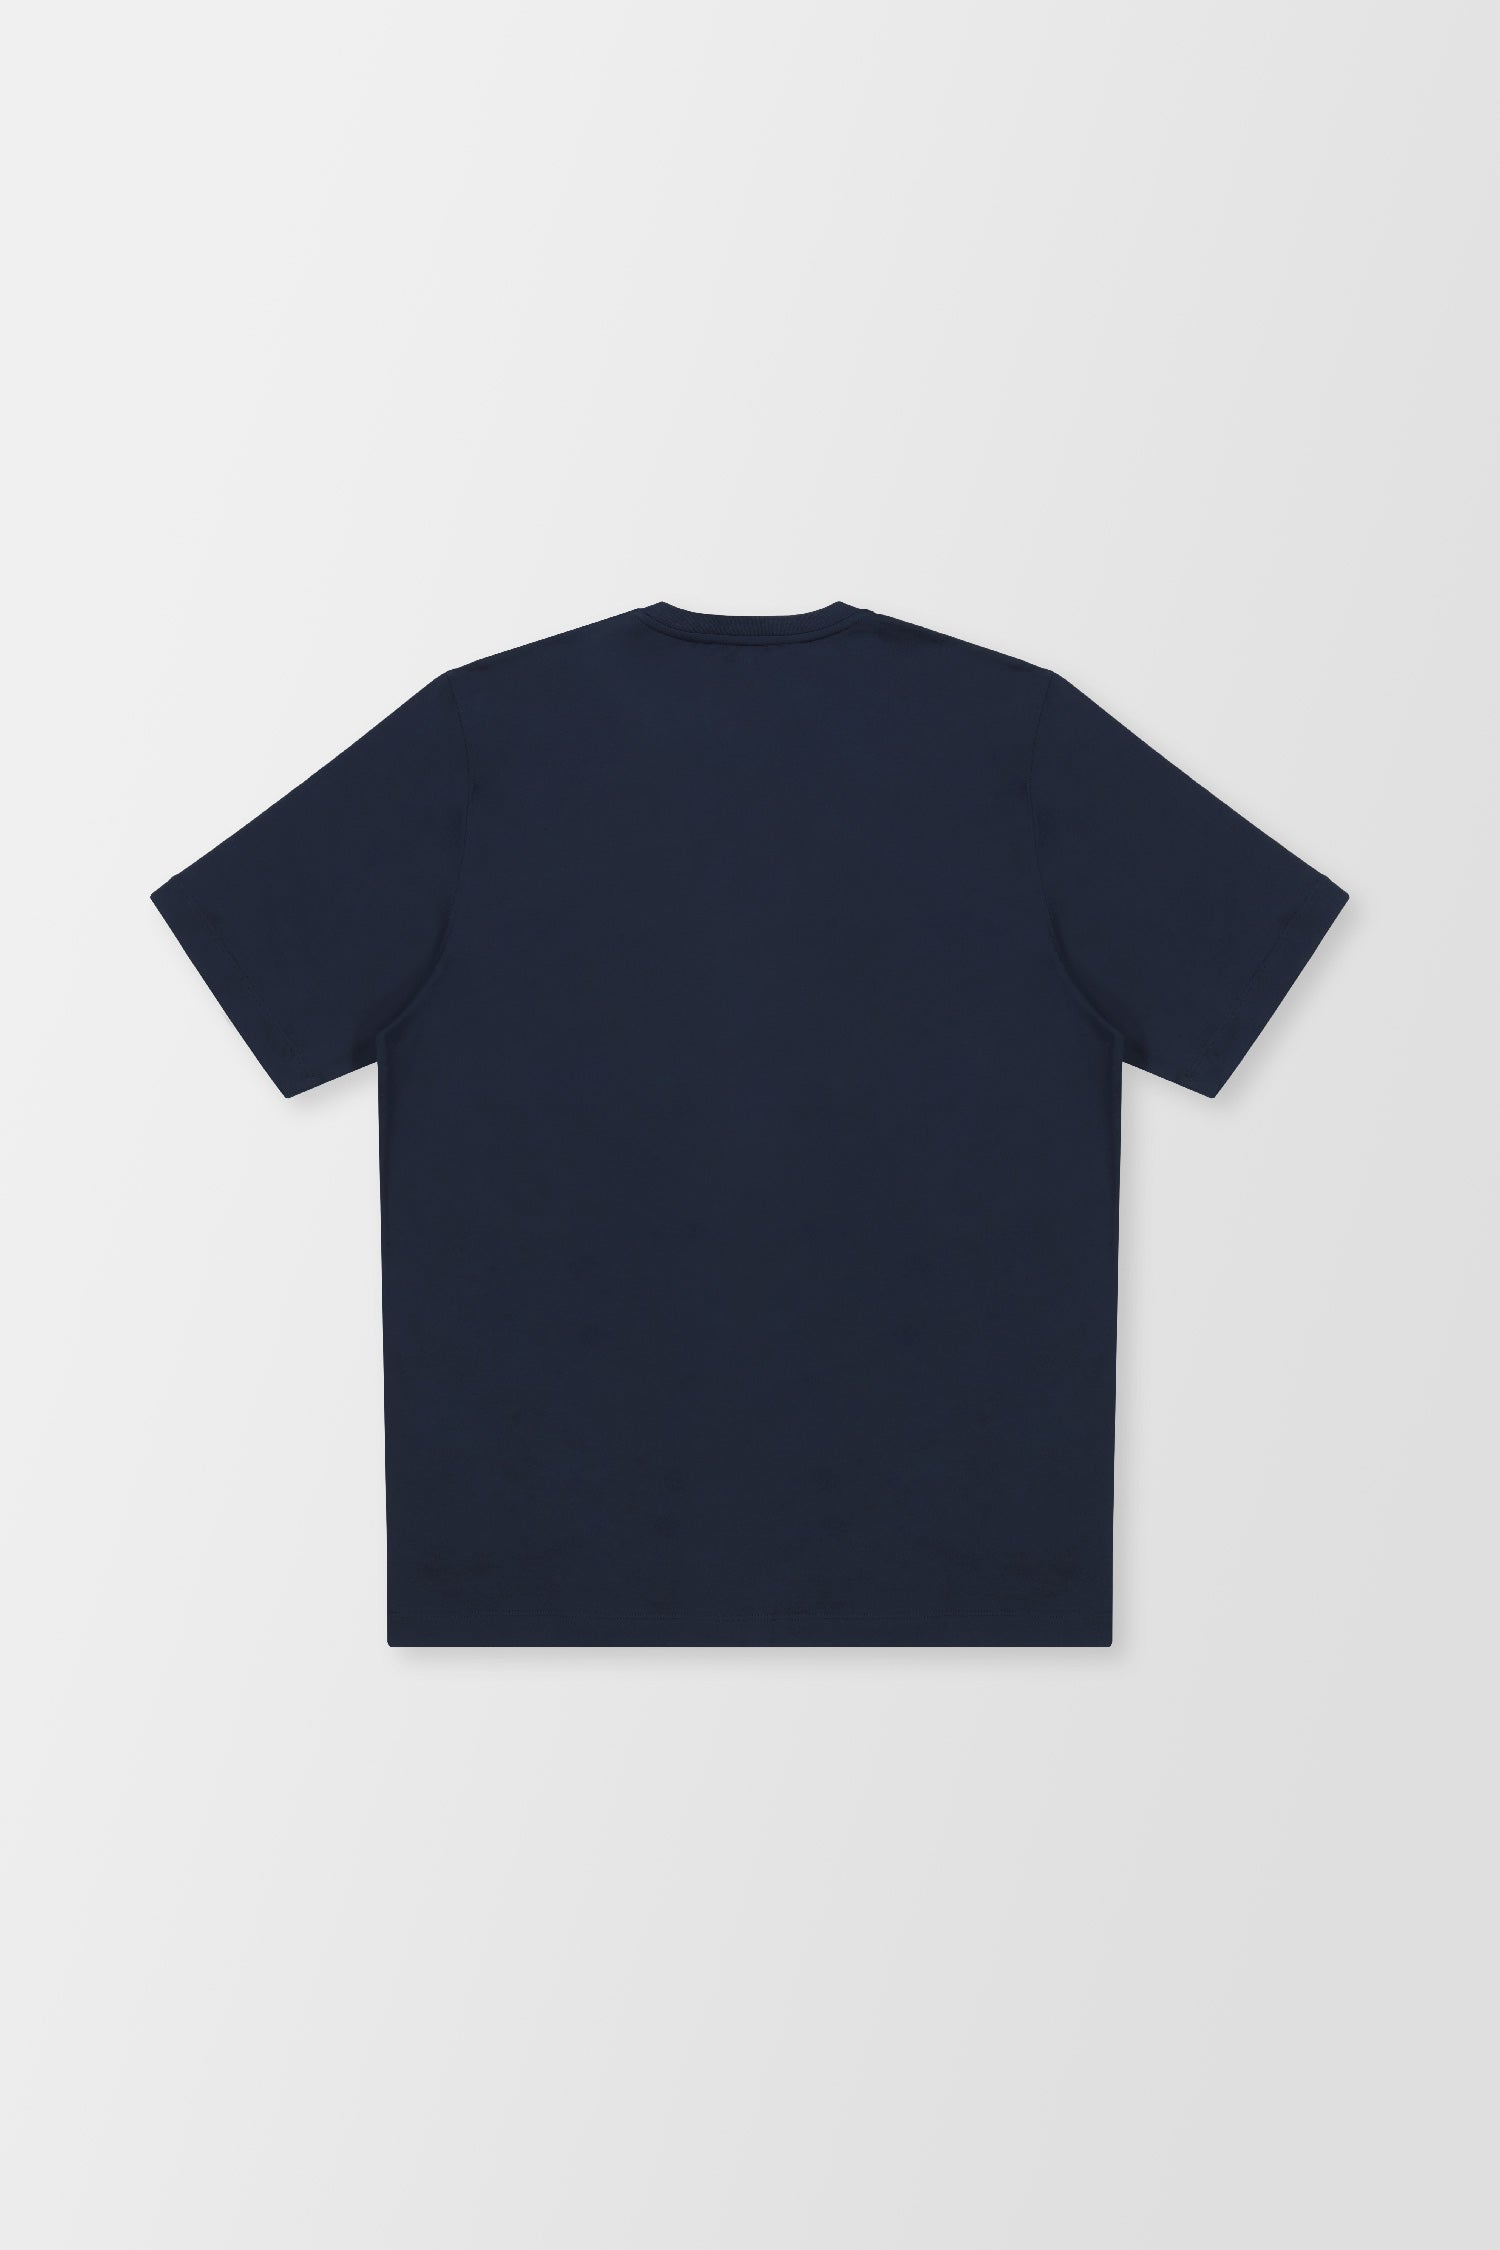 Zilli Navy Broderie Pleine T-Shirt